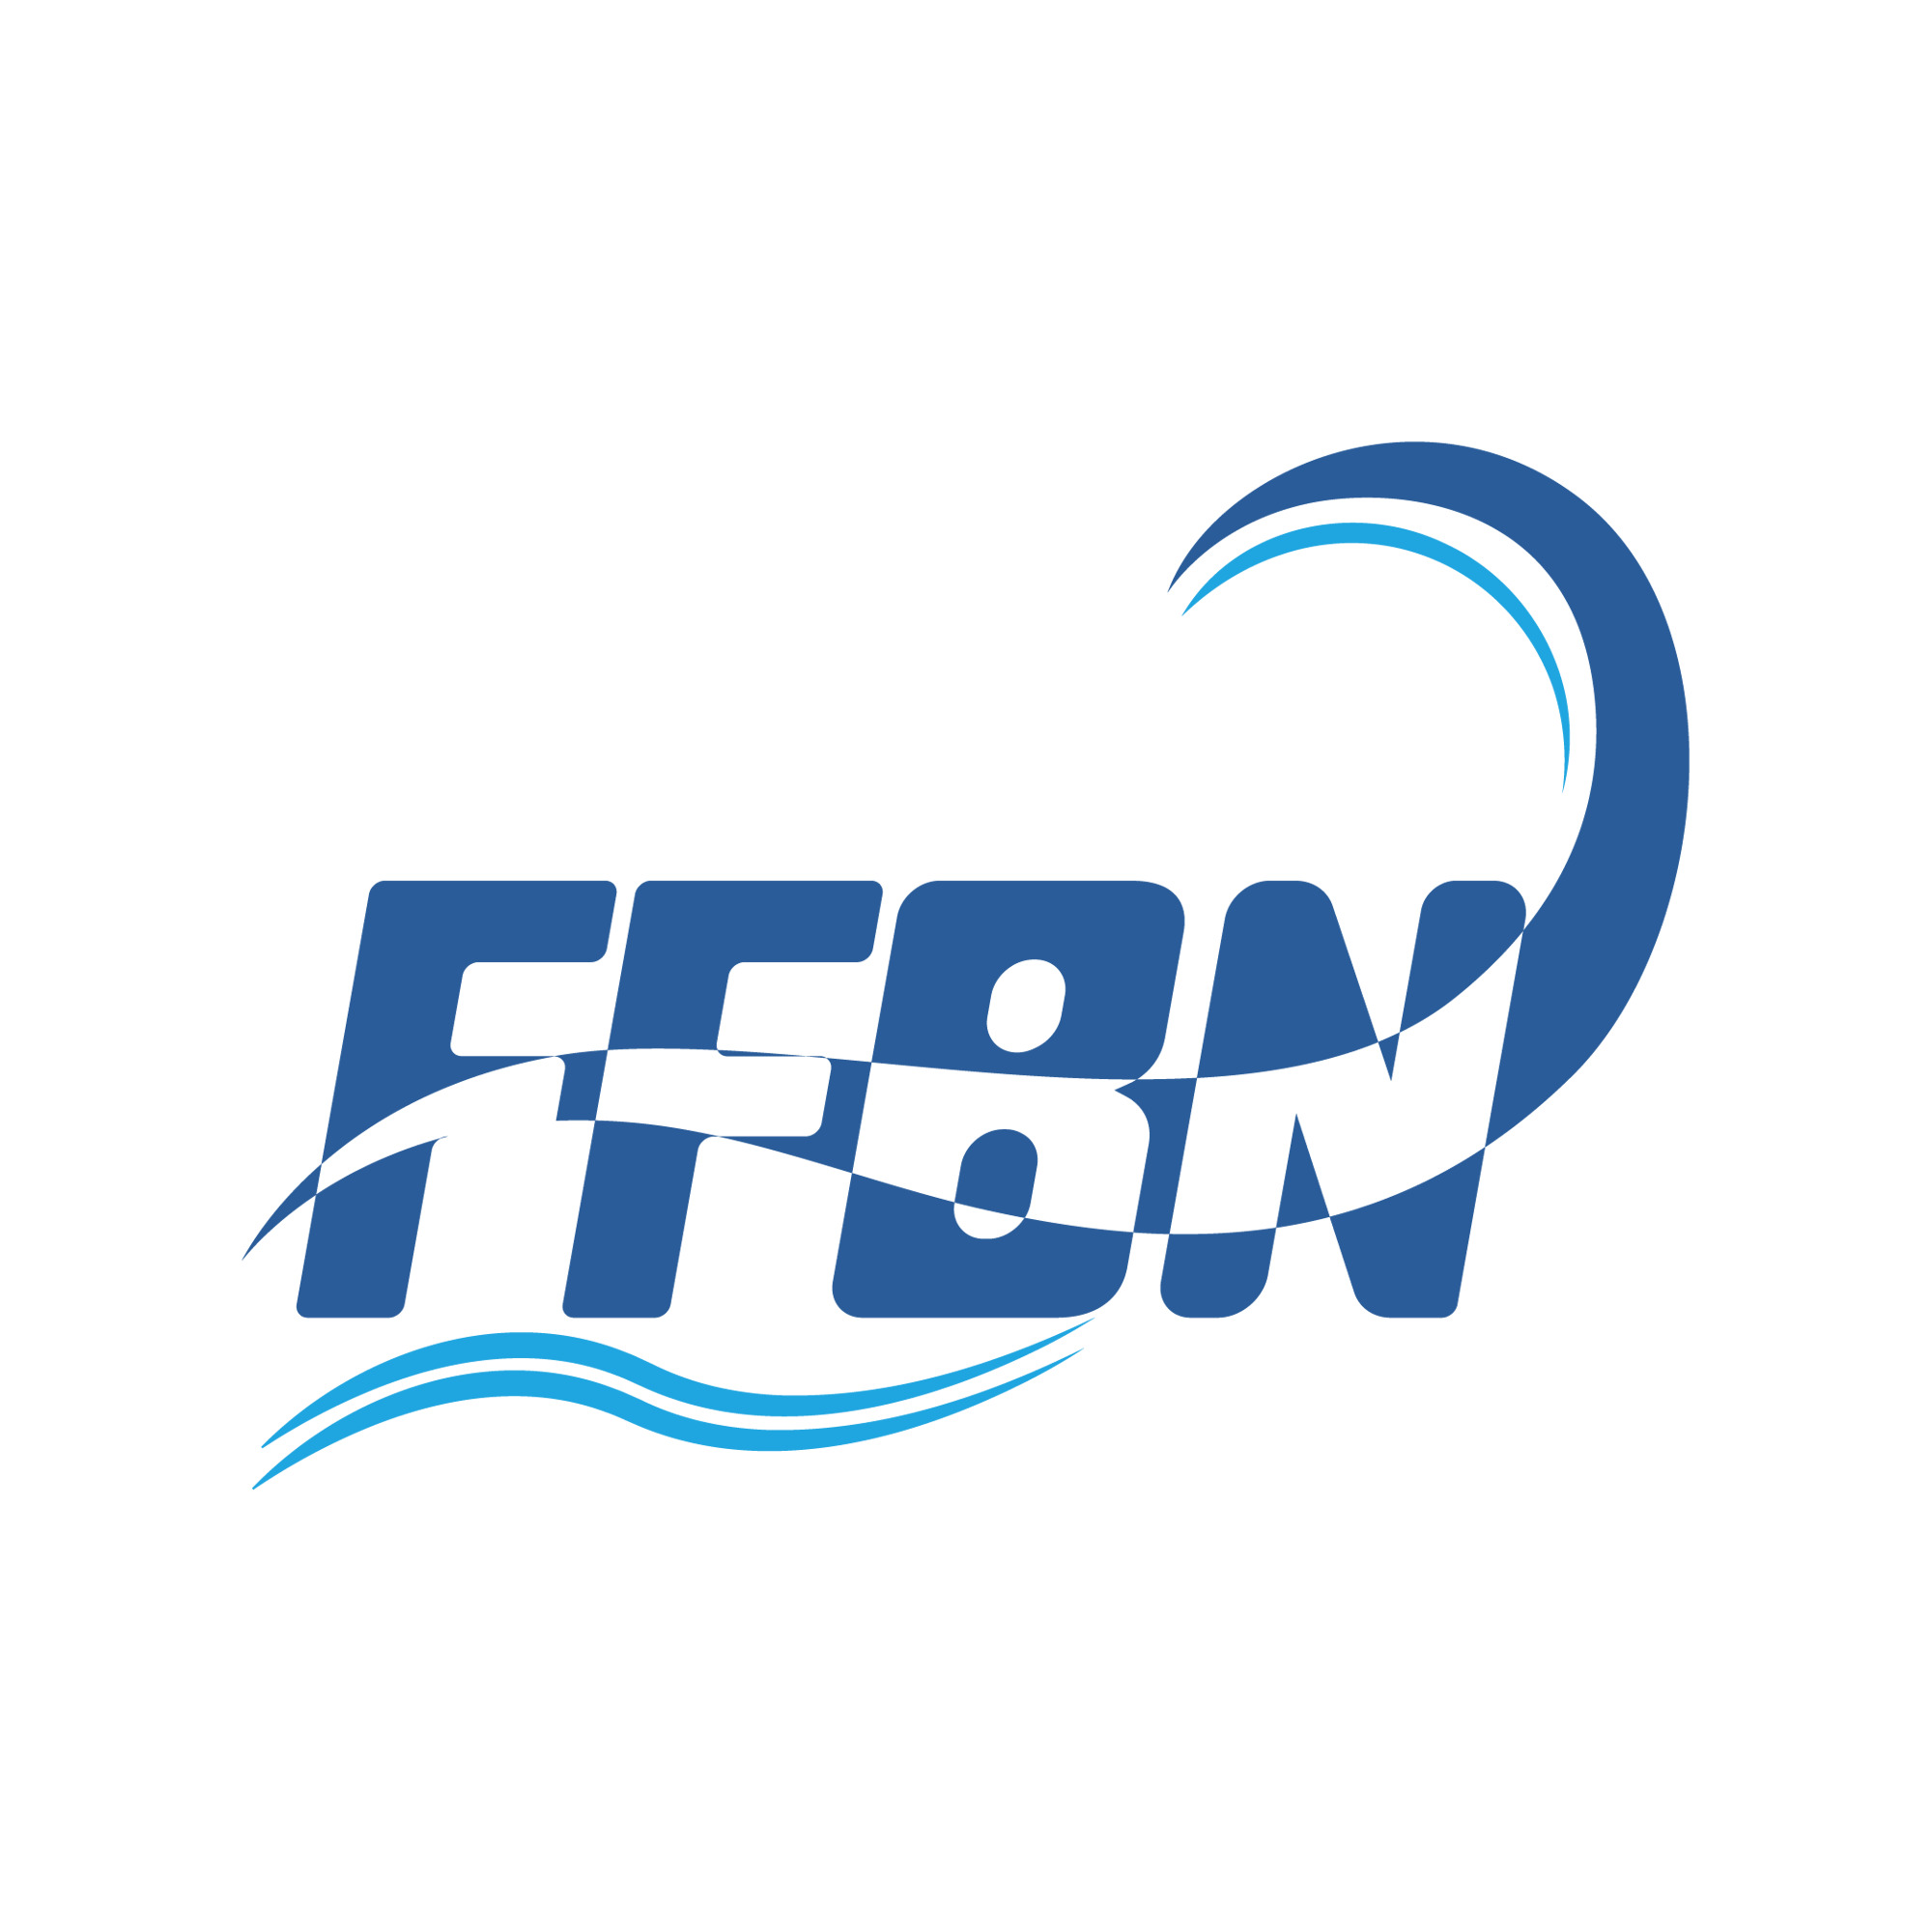 Le centre d'excellence de la FFBN recherche un nouvel entraîneur.euse de natation